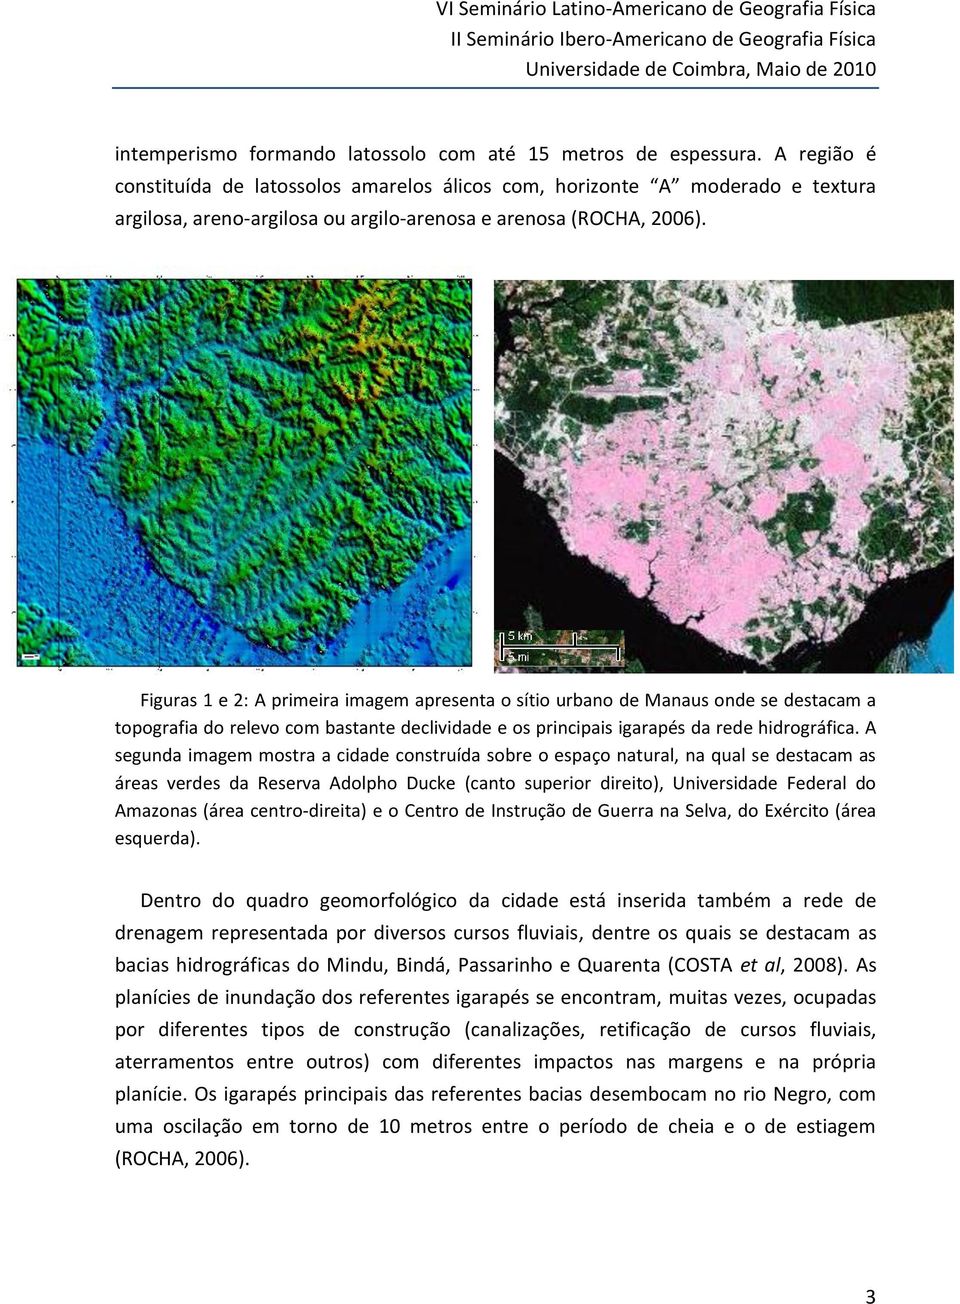 Figuras 1 e 2: A primeira imagem apresenta o sítio urbano de Manaus onde se destacam a topografia do relevo com bastante declividade e os principais igarapés da rede hidrográfica.